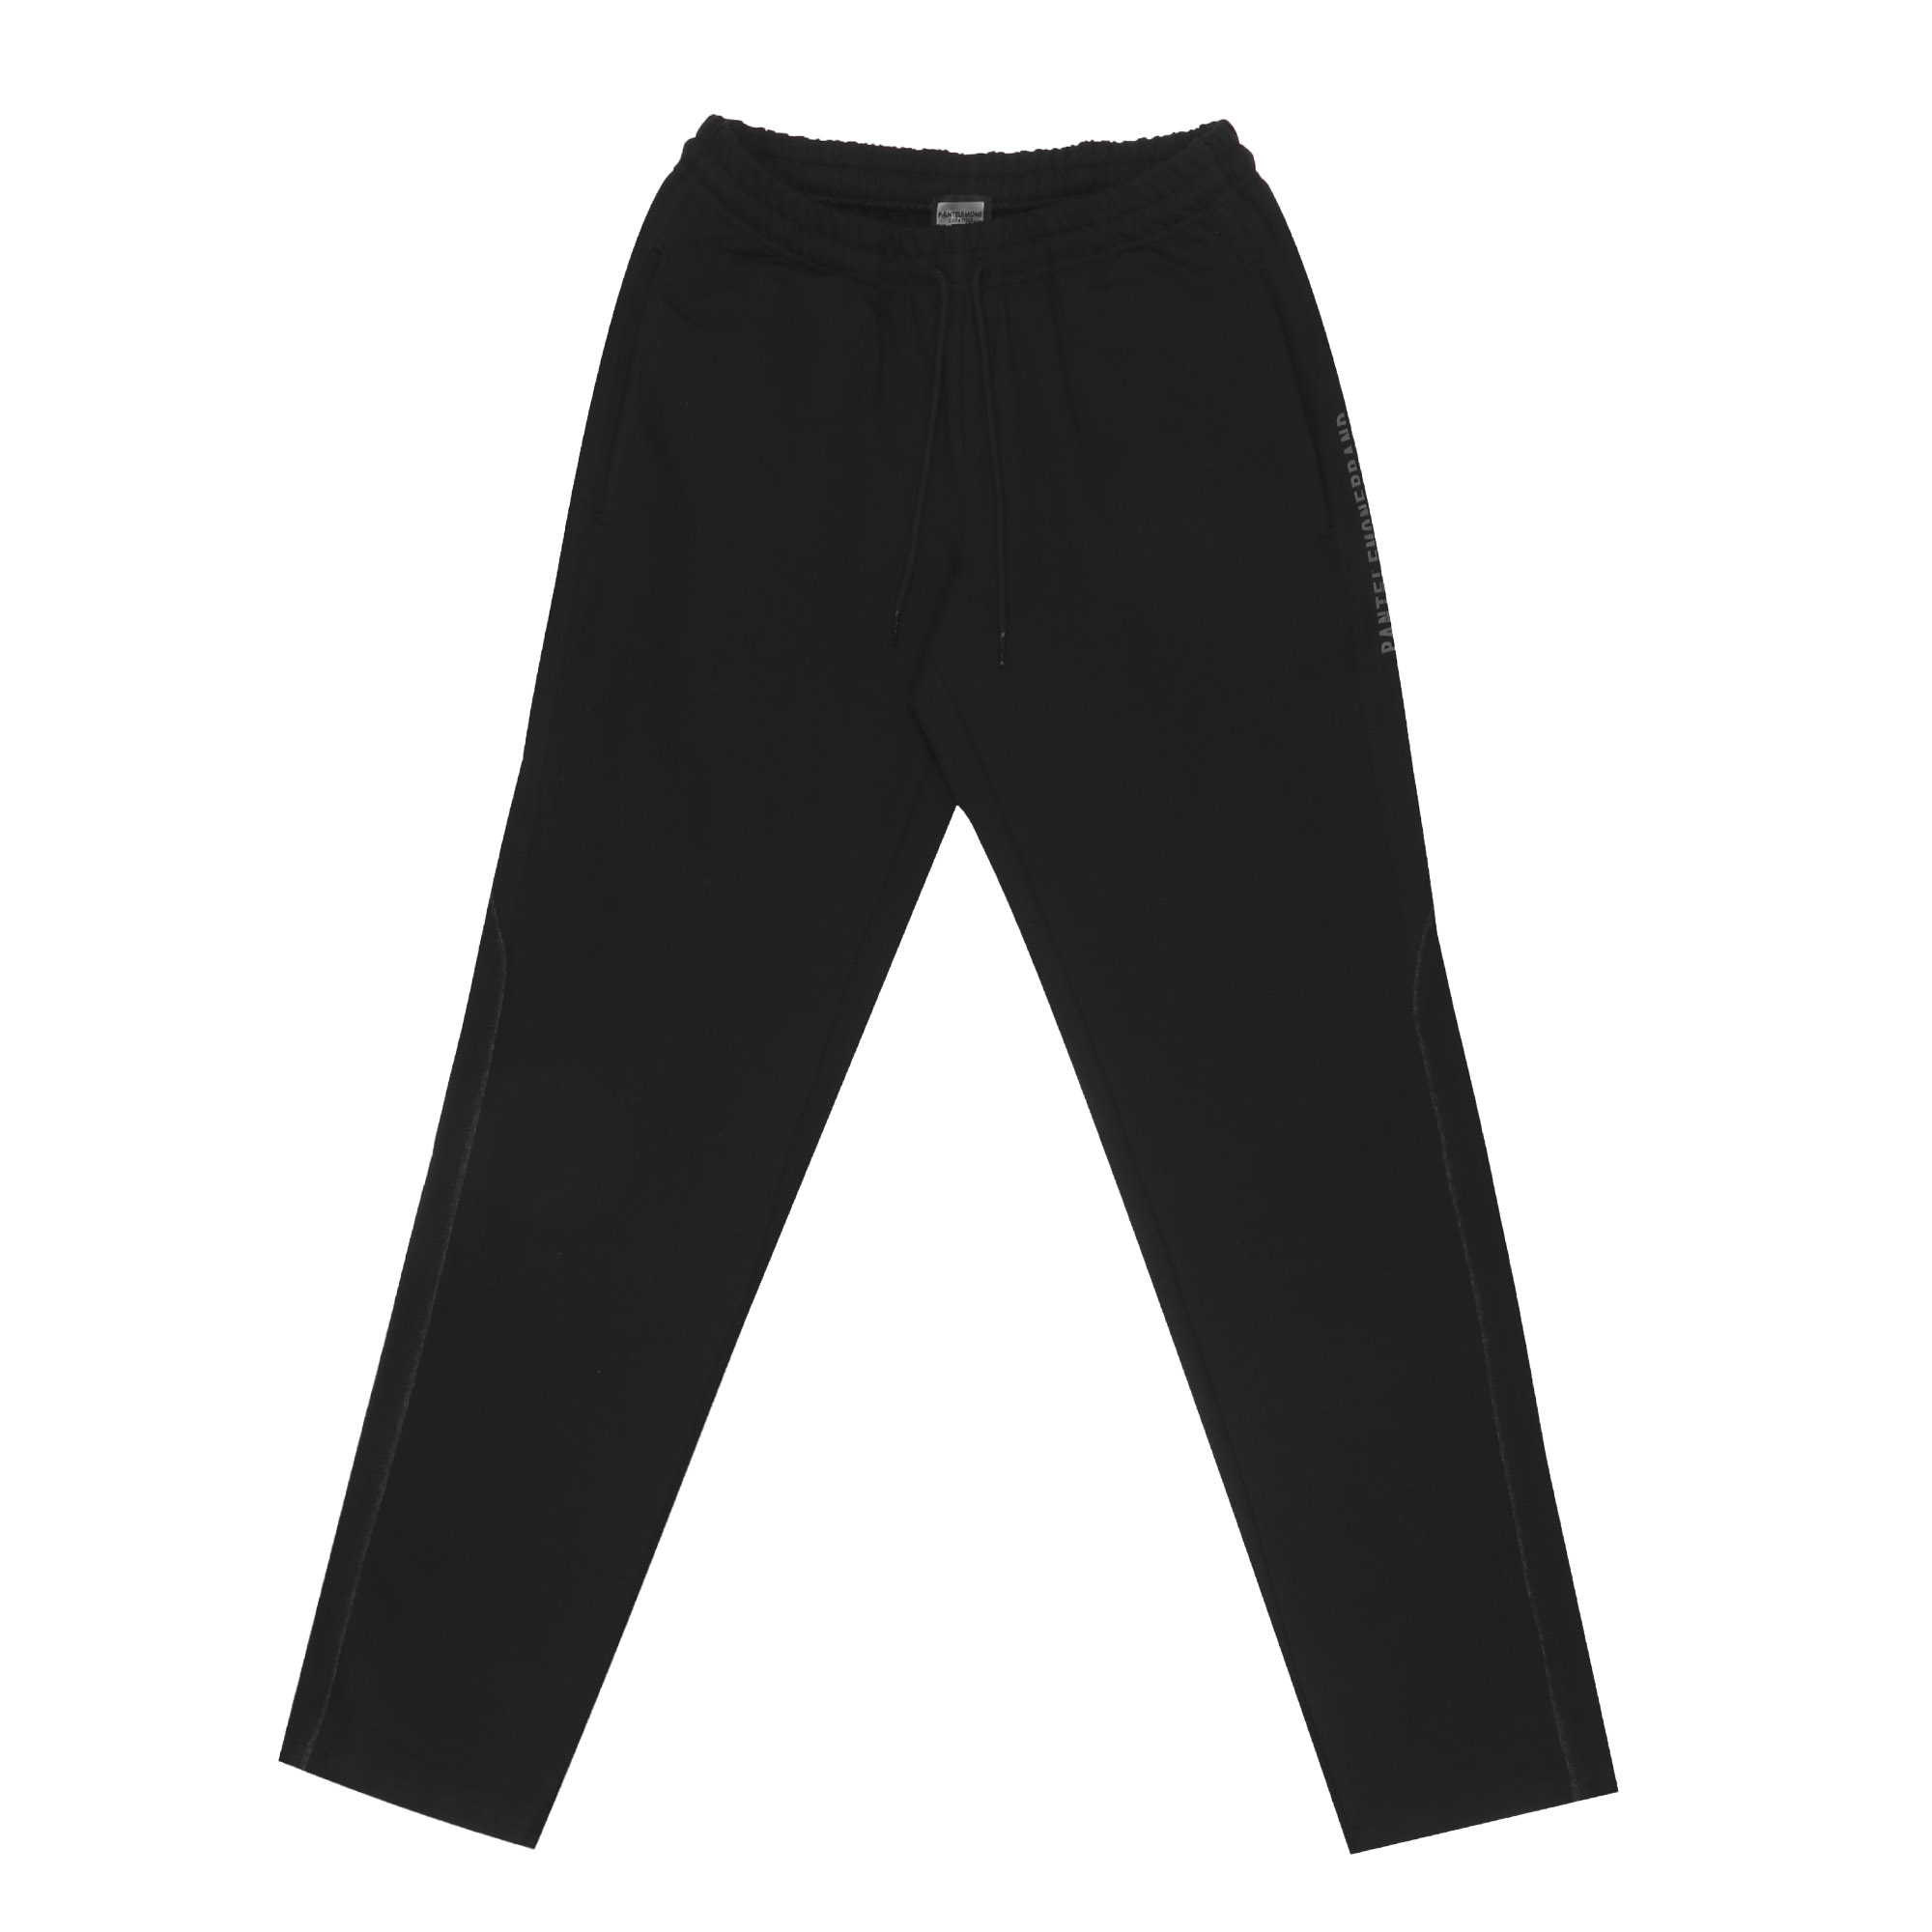 Мужские брюки Pantelemone домашние 56 черные, цвет черный, размер 56 - фото 1